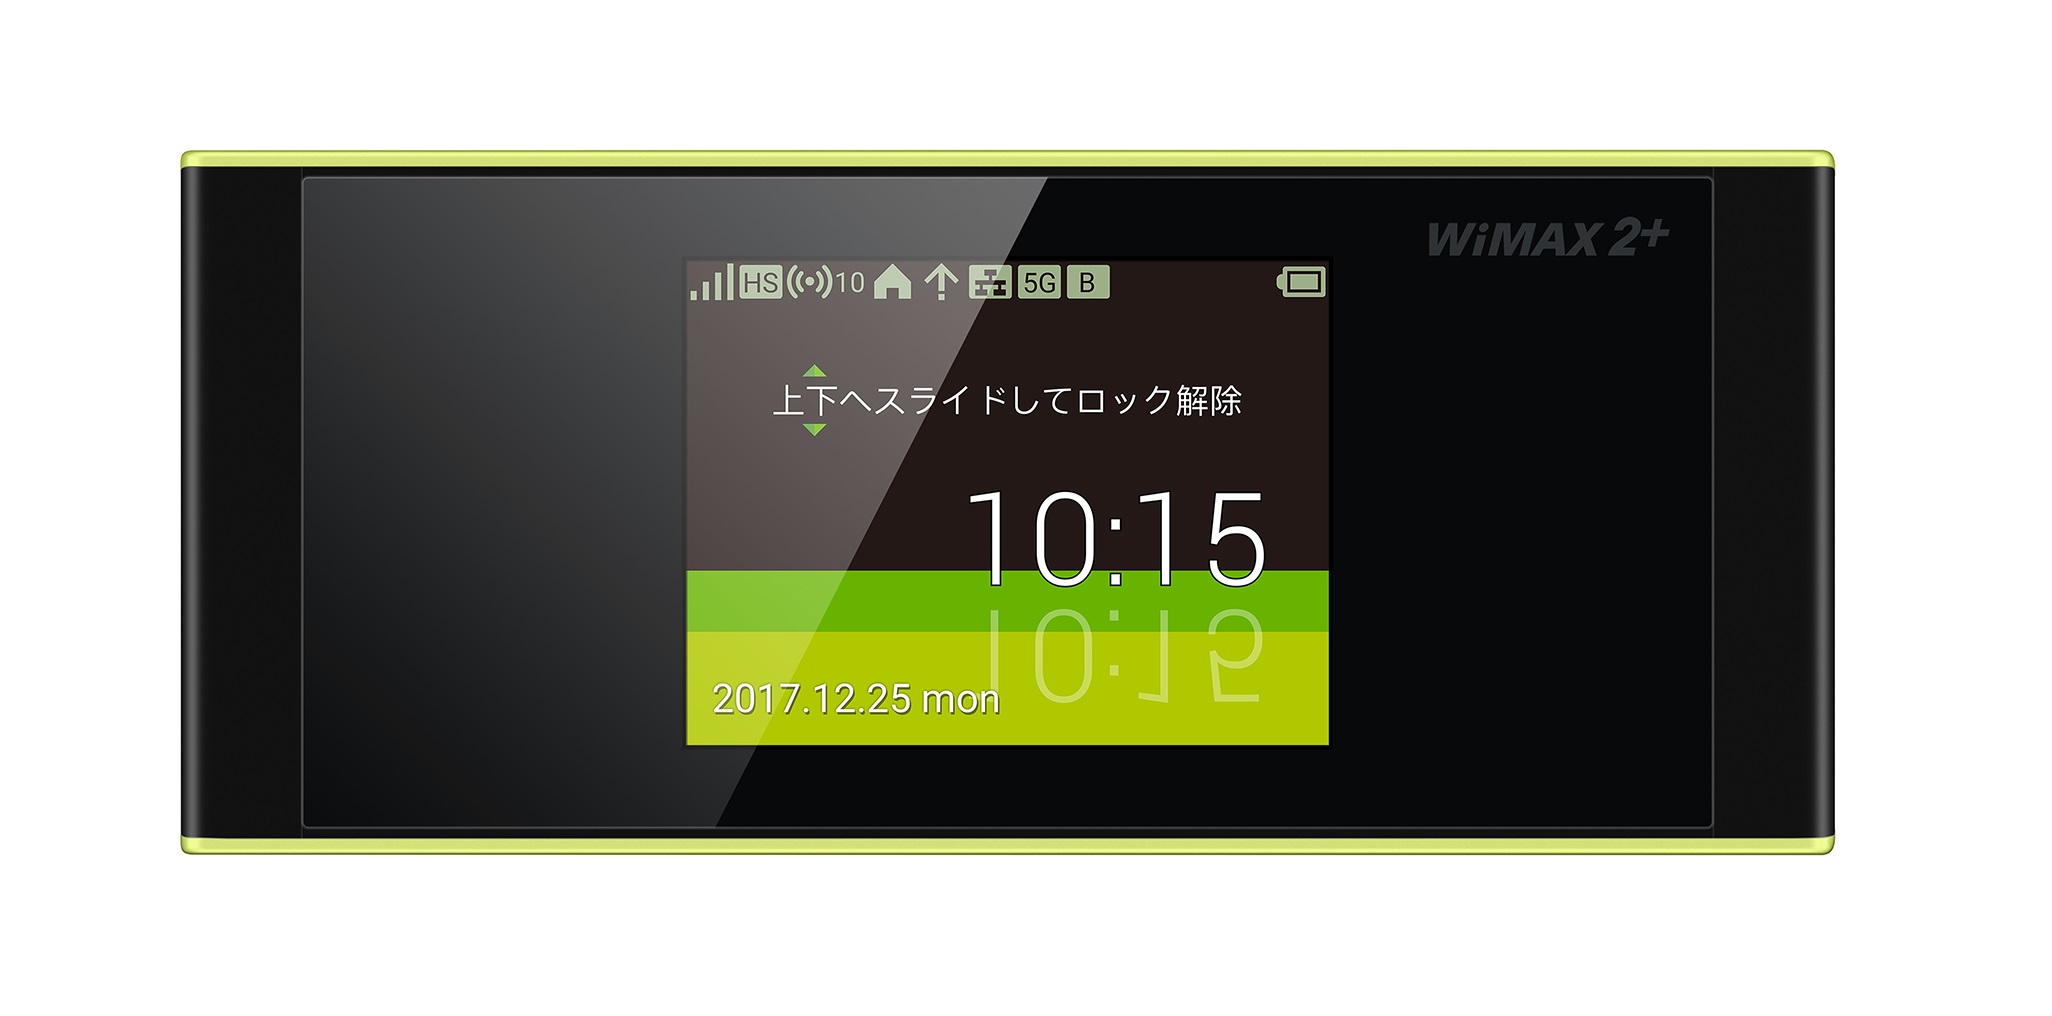 Gmoインターネット Gmoとくとくbb Wimax 2 最新wi Fiルーター Speed Wi Fi Next W05 Speed Wi Fi Home L01s 先行受付開始 Gmoインターネットグループのプレスリリース